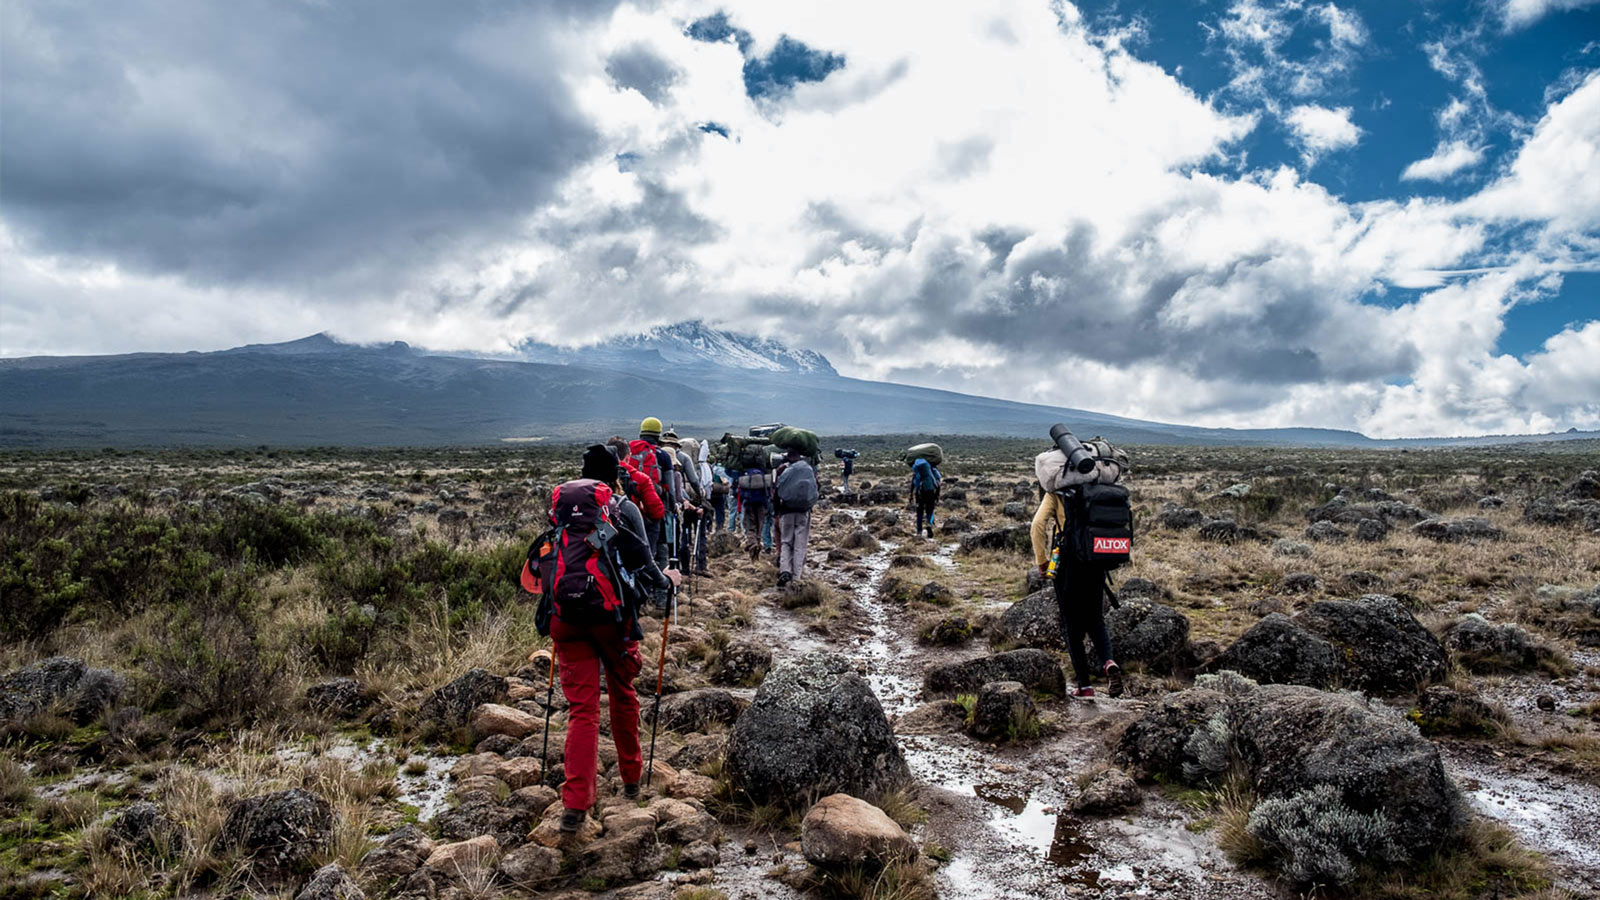 Kilimanjaro day hike